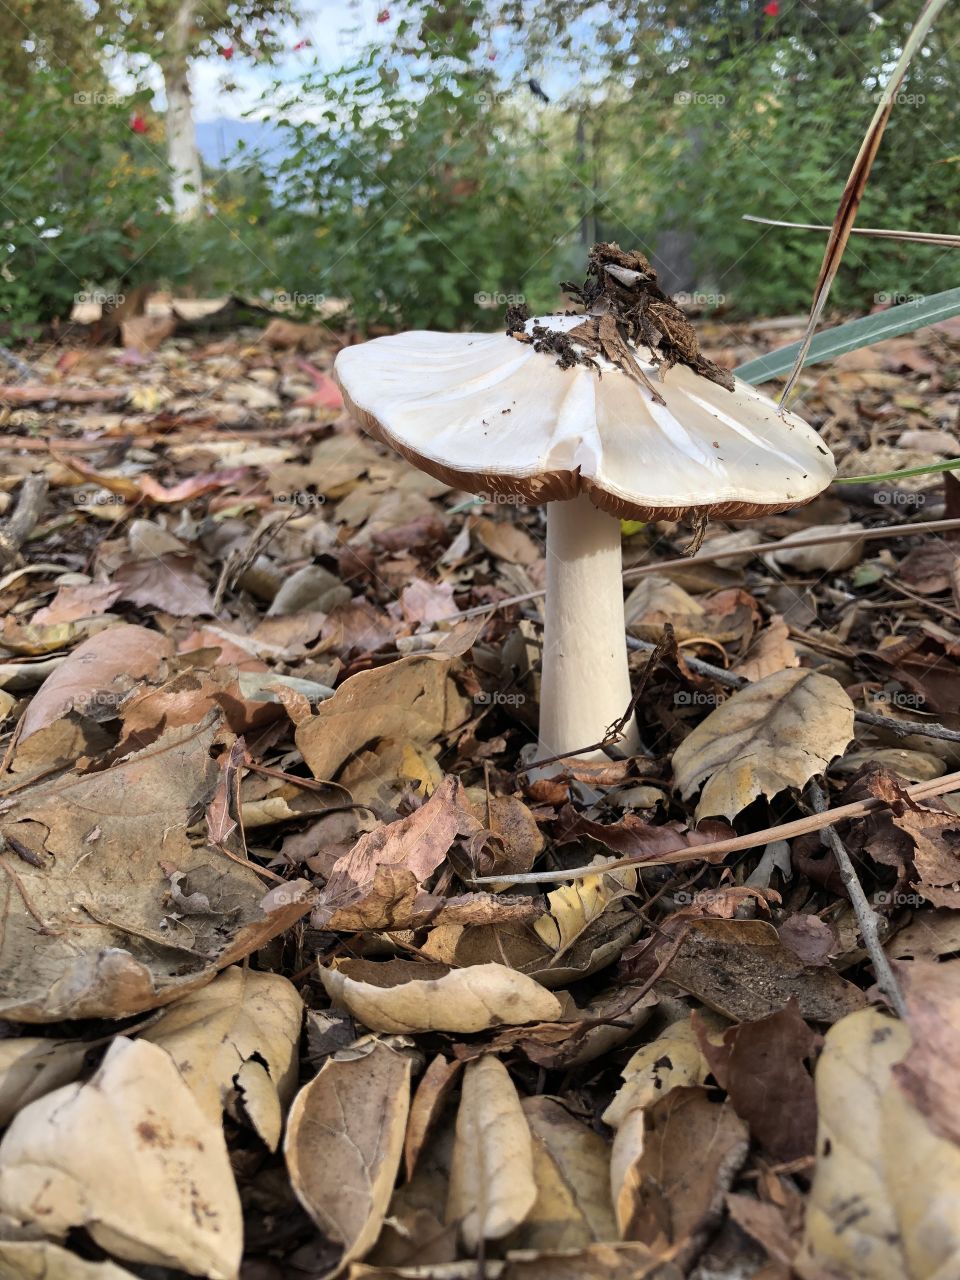 Mulch with a mushroom